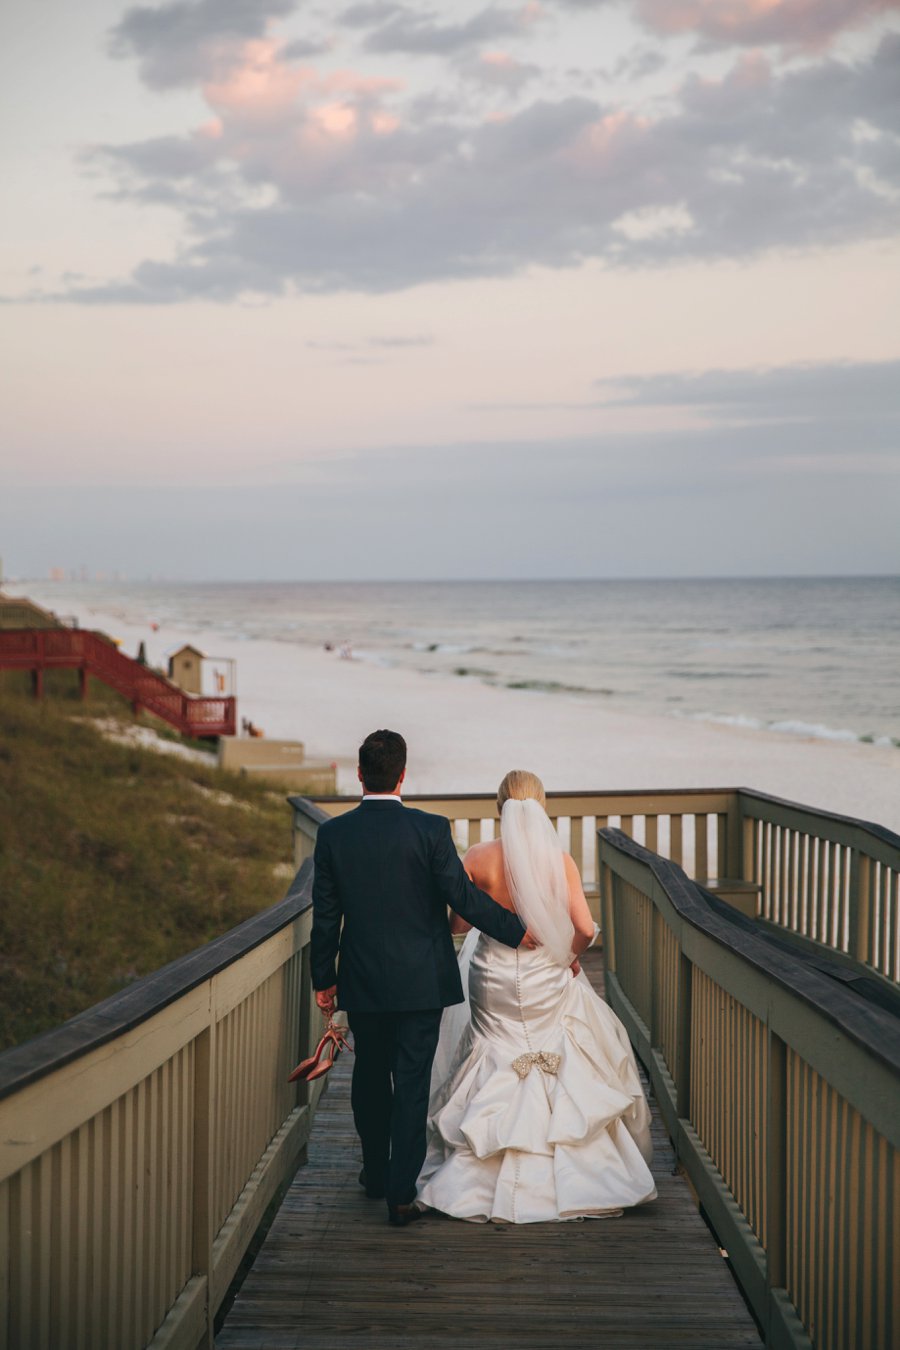 A Classic Green & White Florida Beach Wedding via TheELD.com